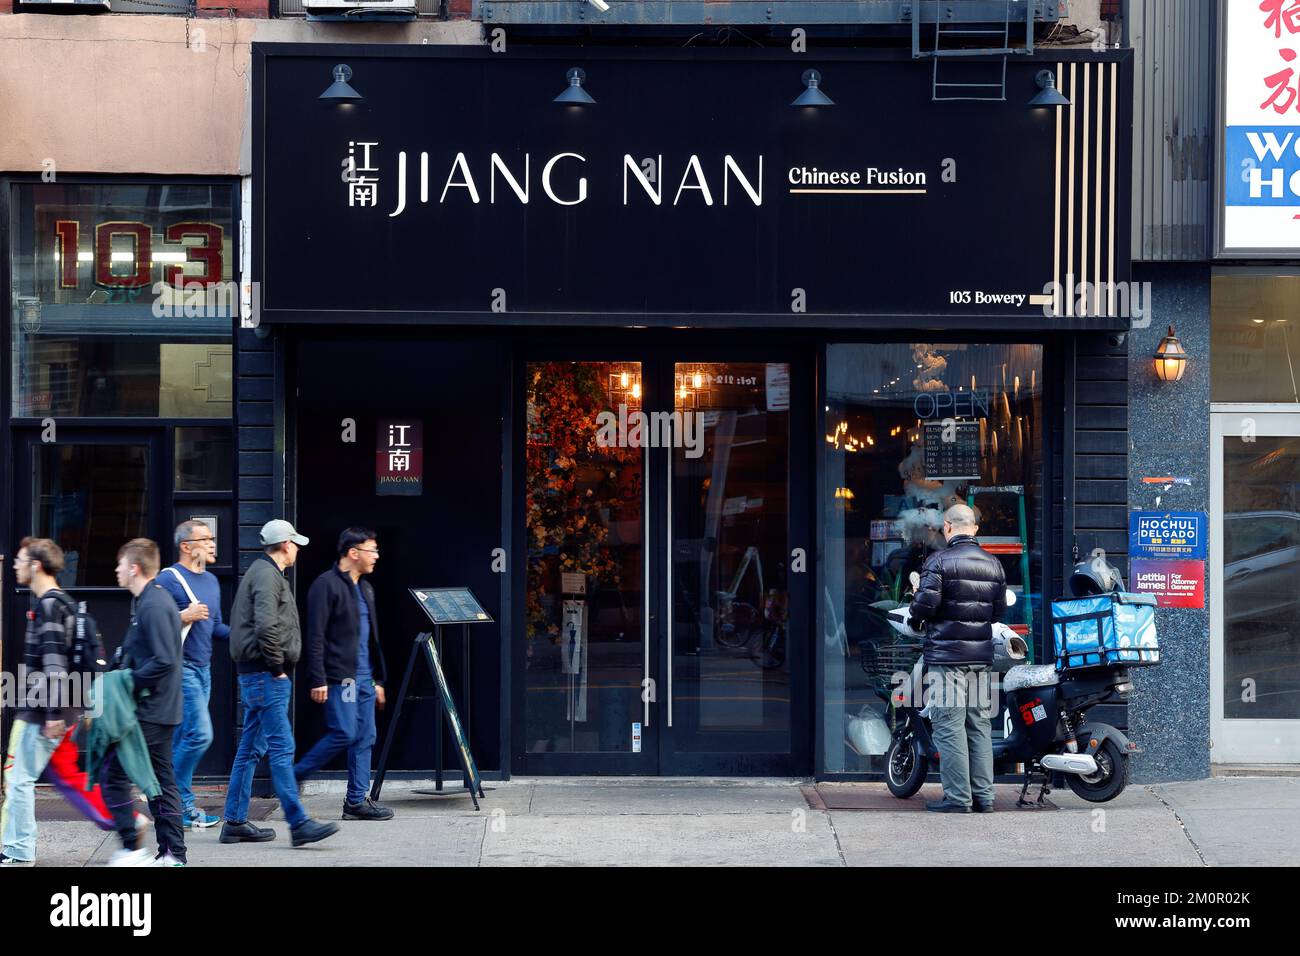 Jiang Nan 江南食府, 103 Bowery, Nueva York, Nueva York, Nueva York, foto de un restaurante chino en el barrio chino de Manhattan. Foto de stock